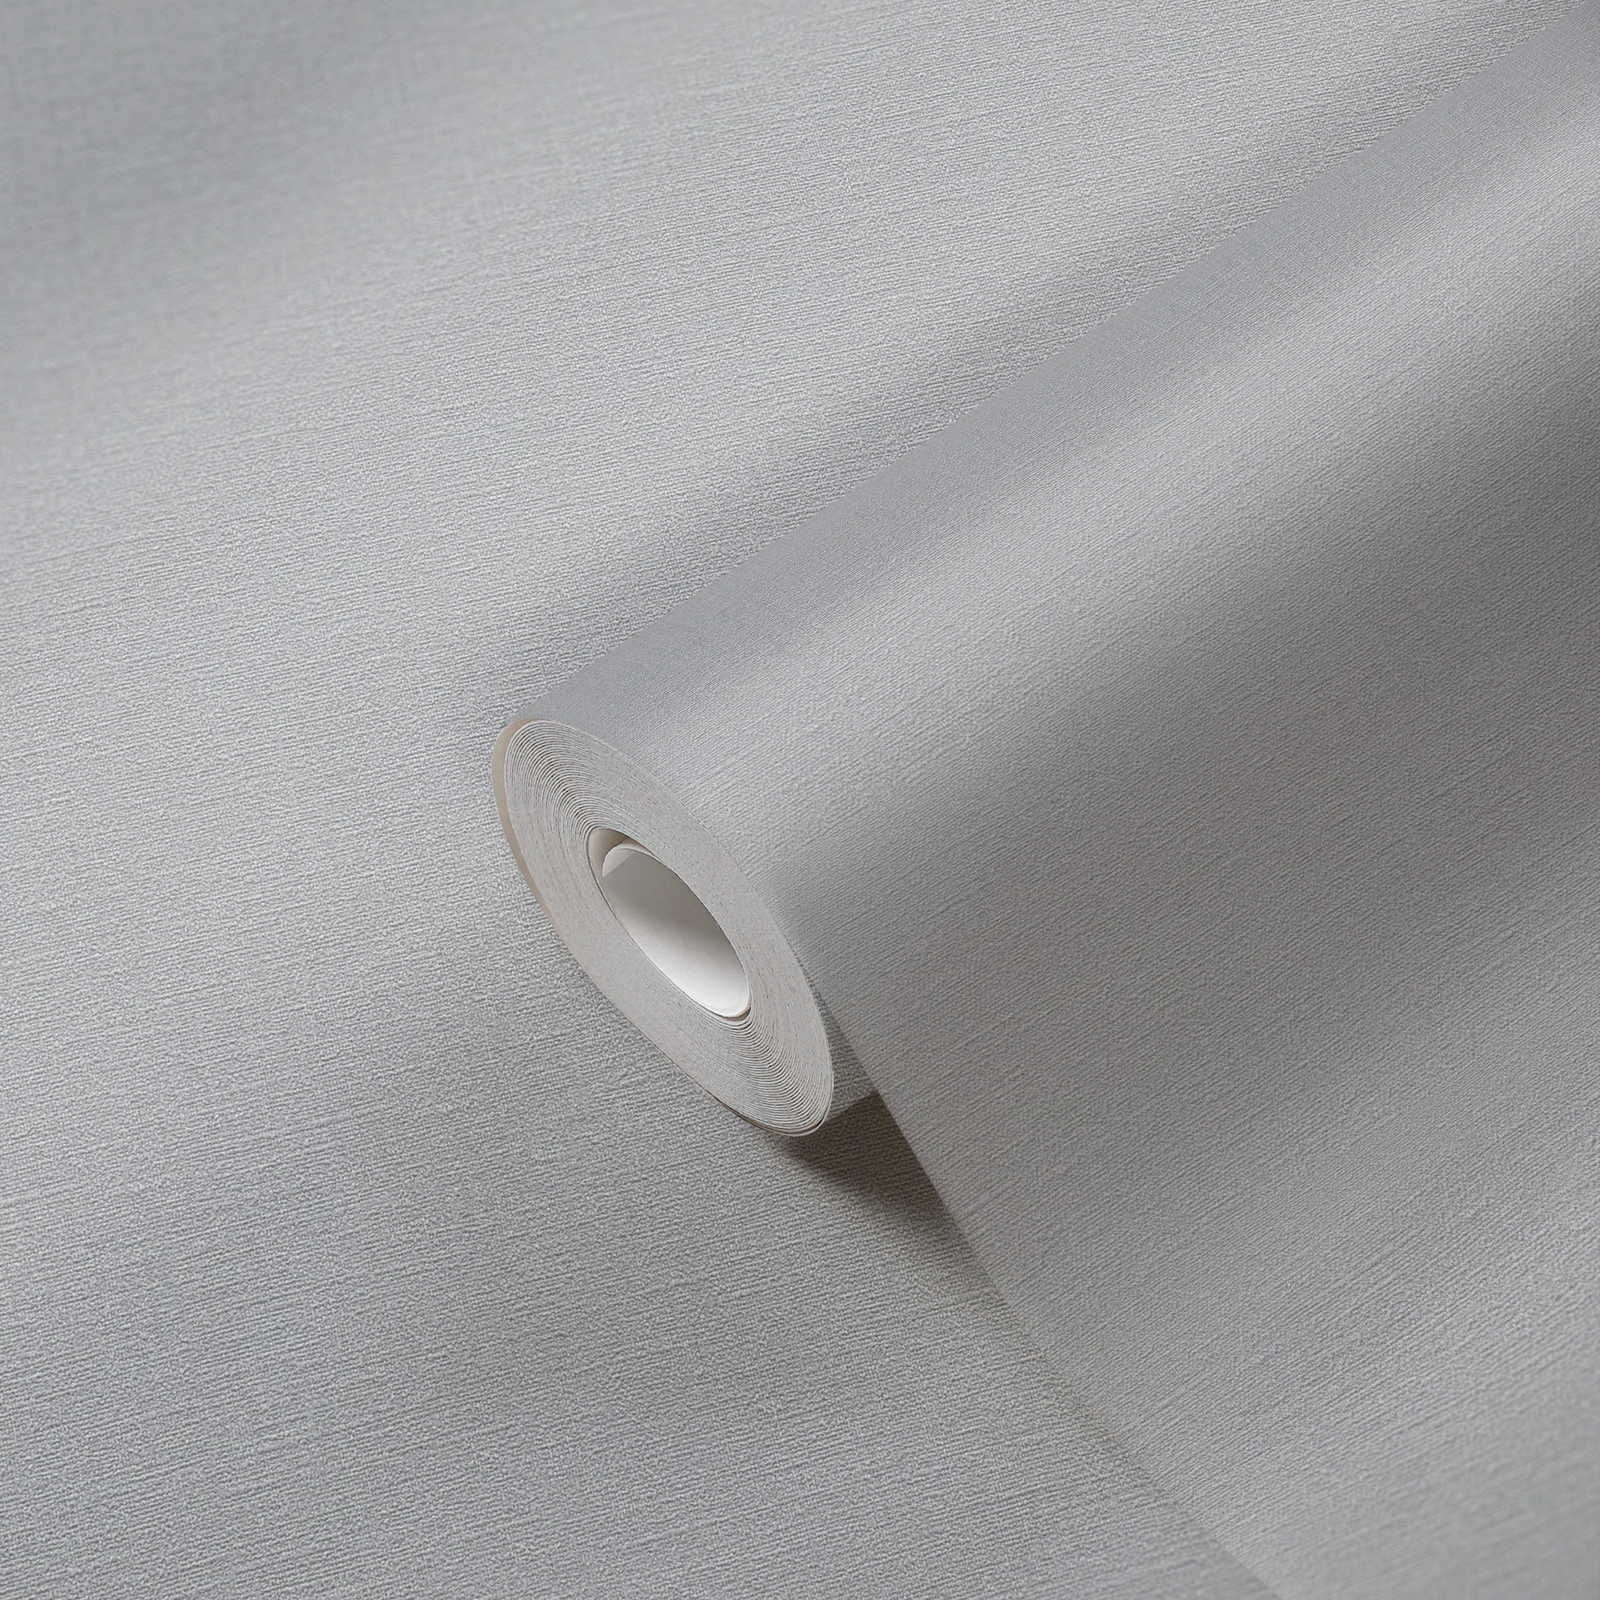             Vliestapete einfarbig mit leichter Textilstruktur PVC-frei – Beige
        